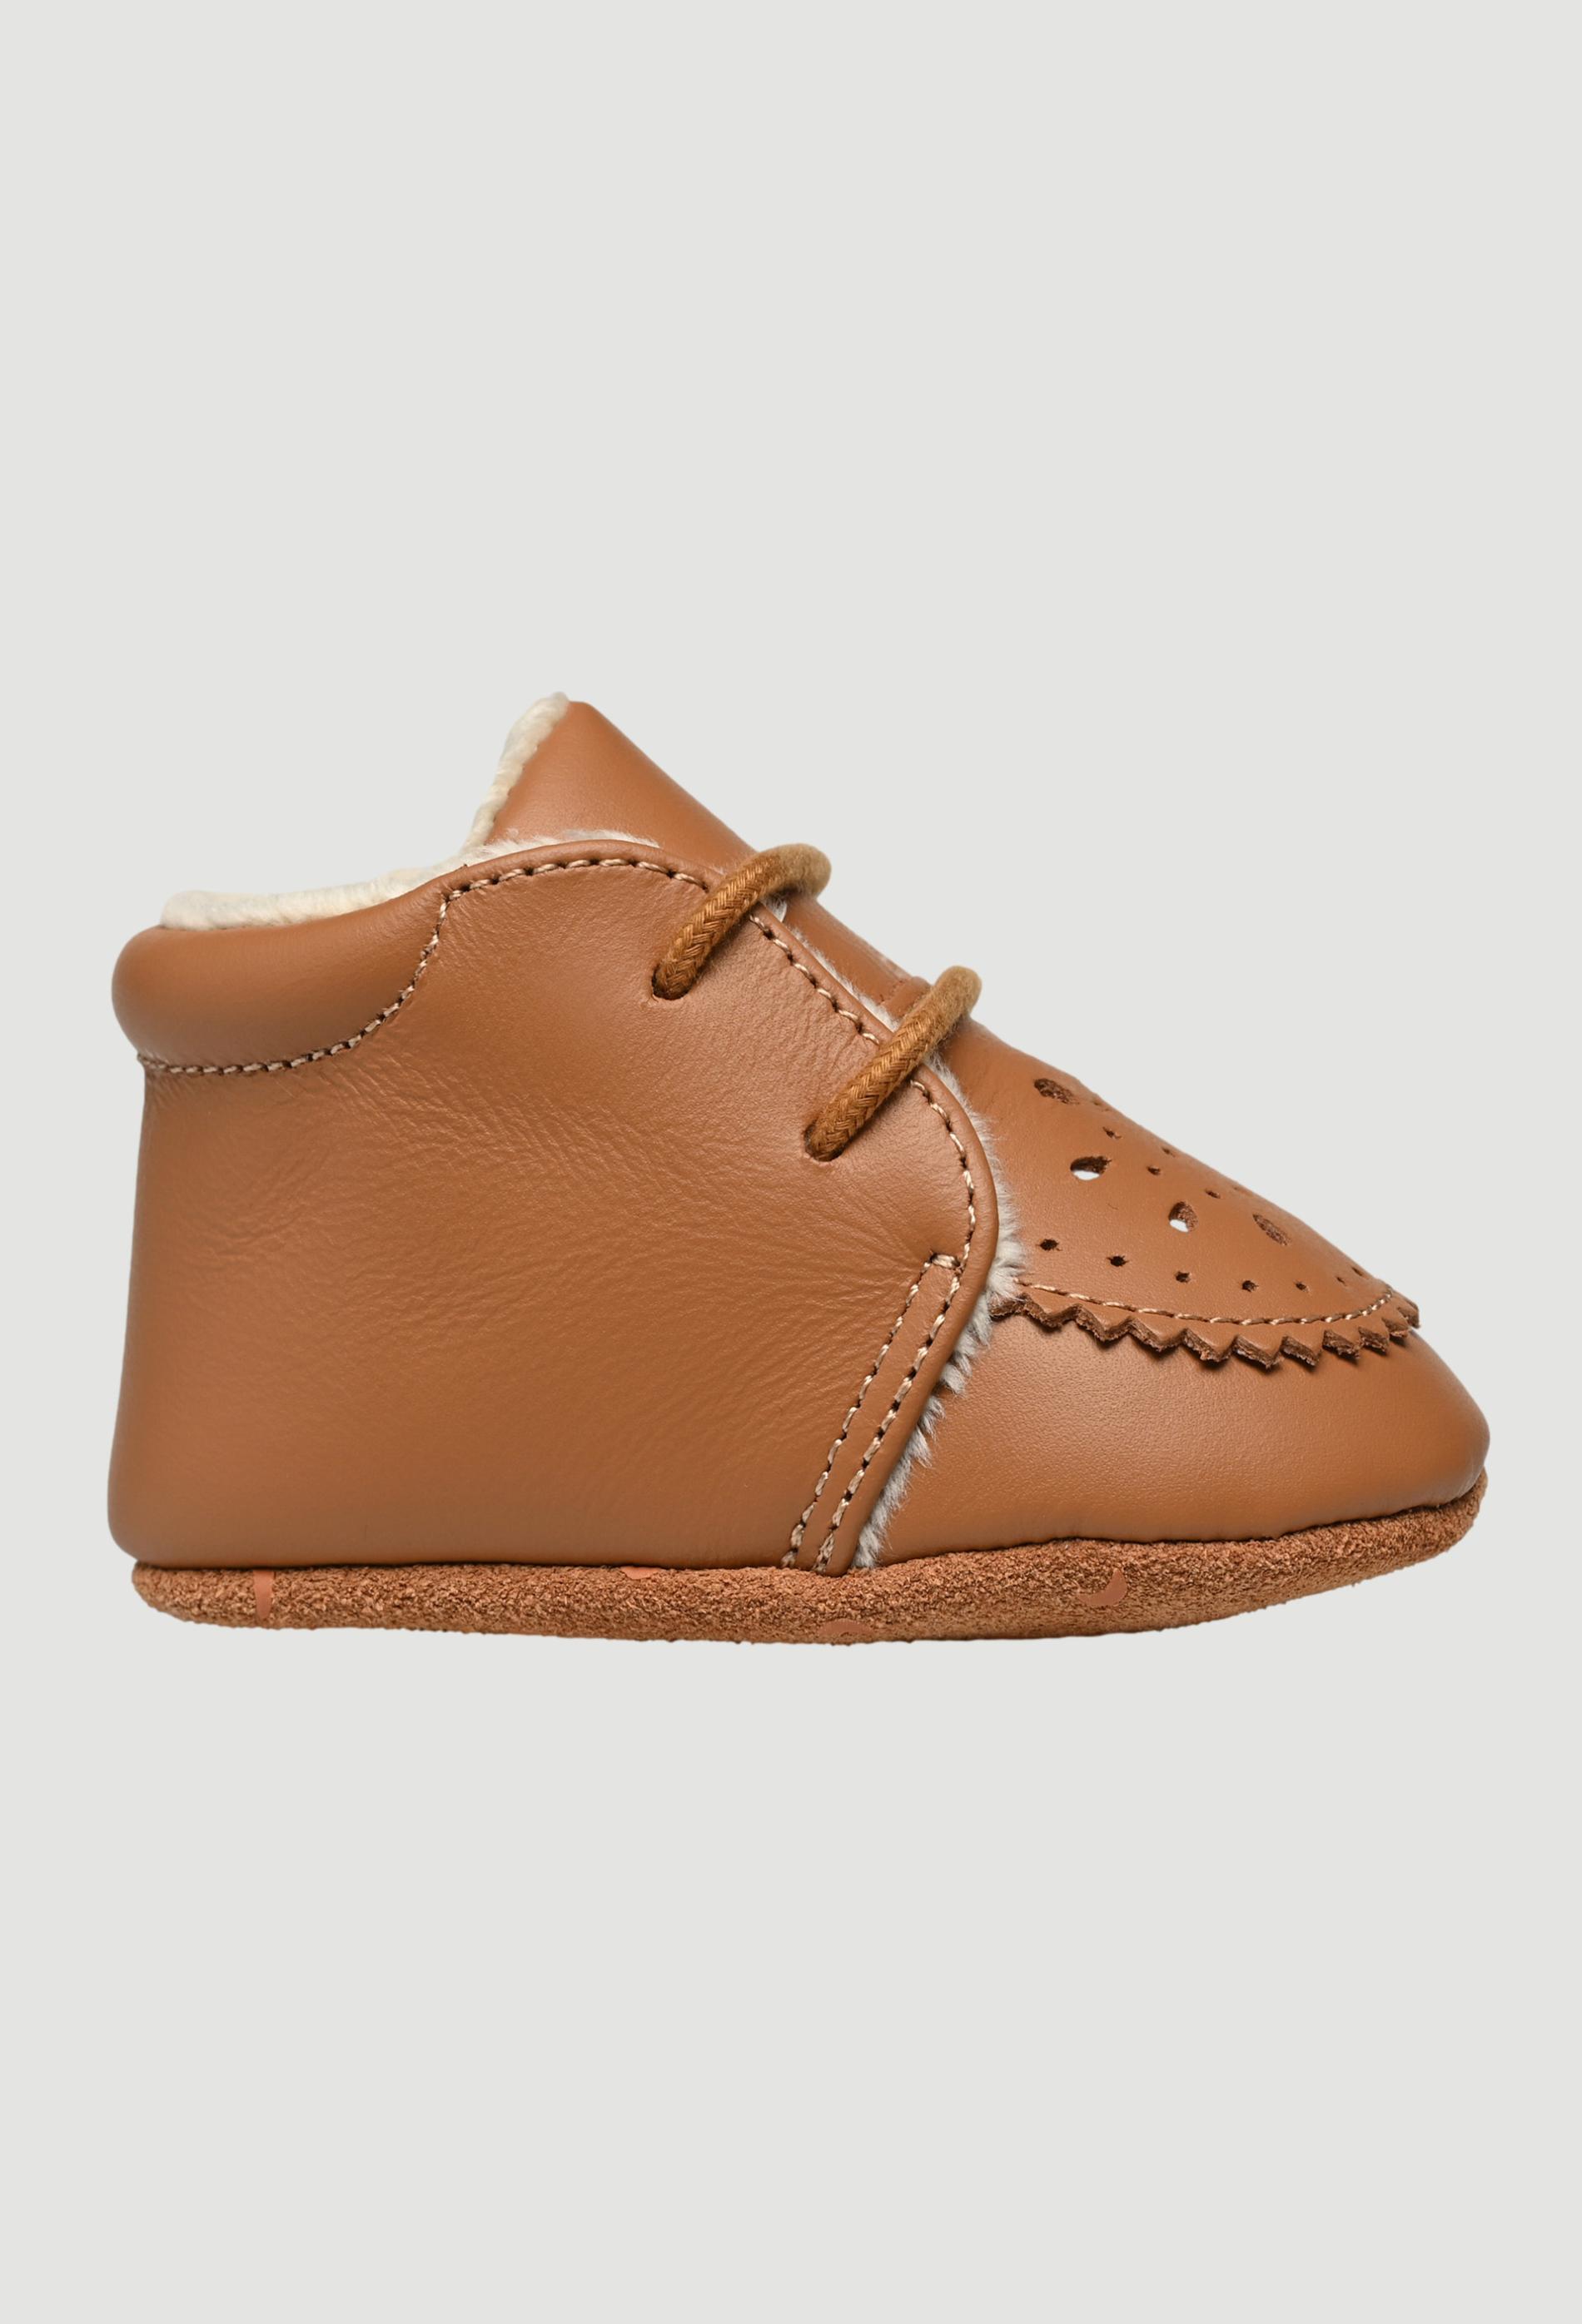 Chaussures fourrées en cuir 15-16 brun clair